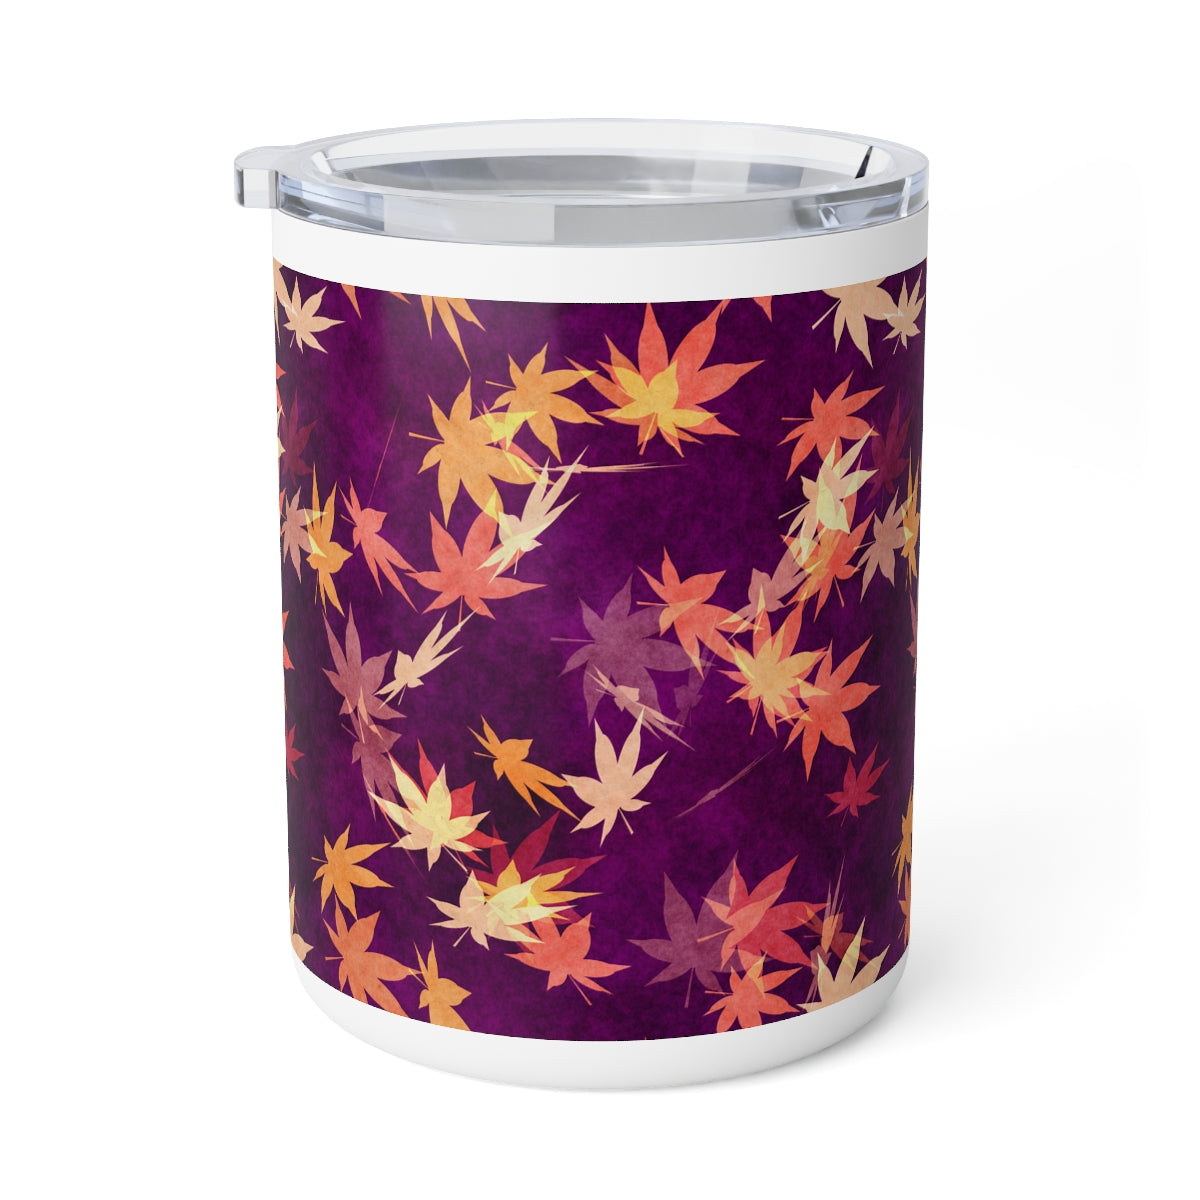 Autumn Leaves Insulated Coffee Mug, 10oz